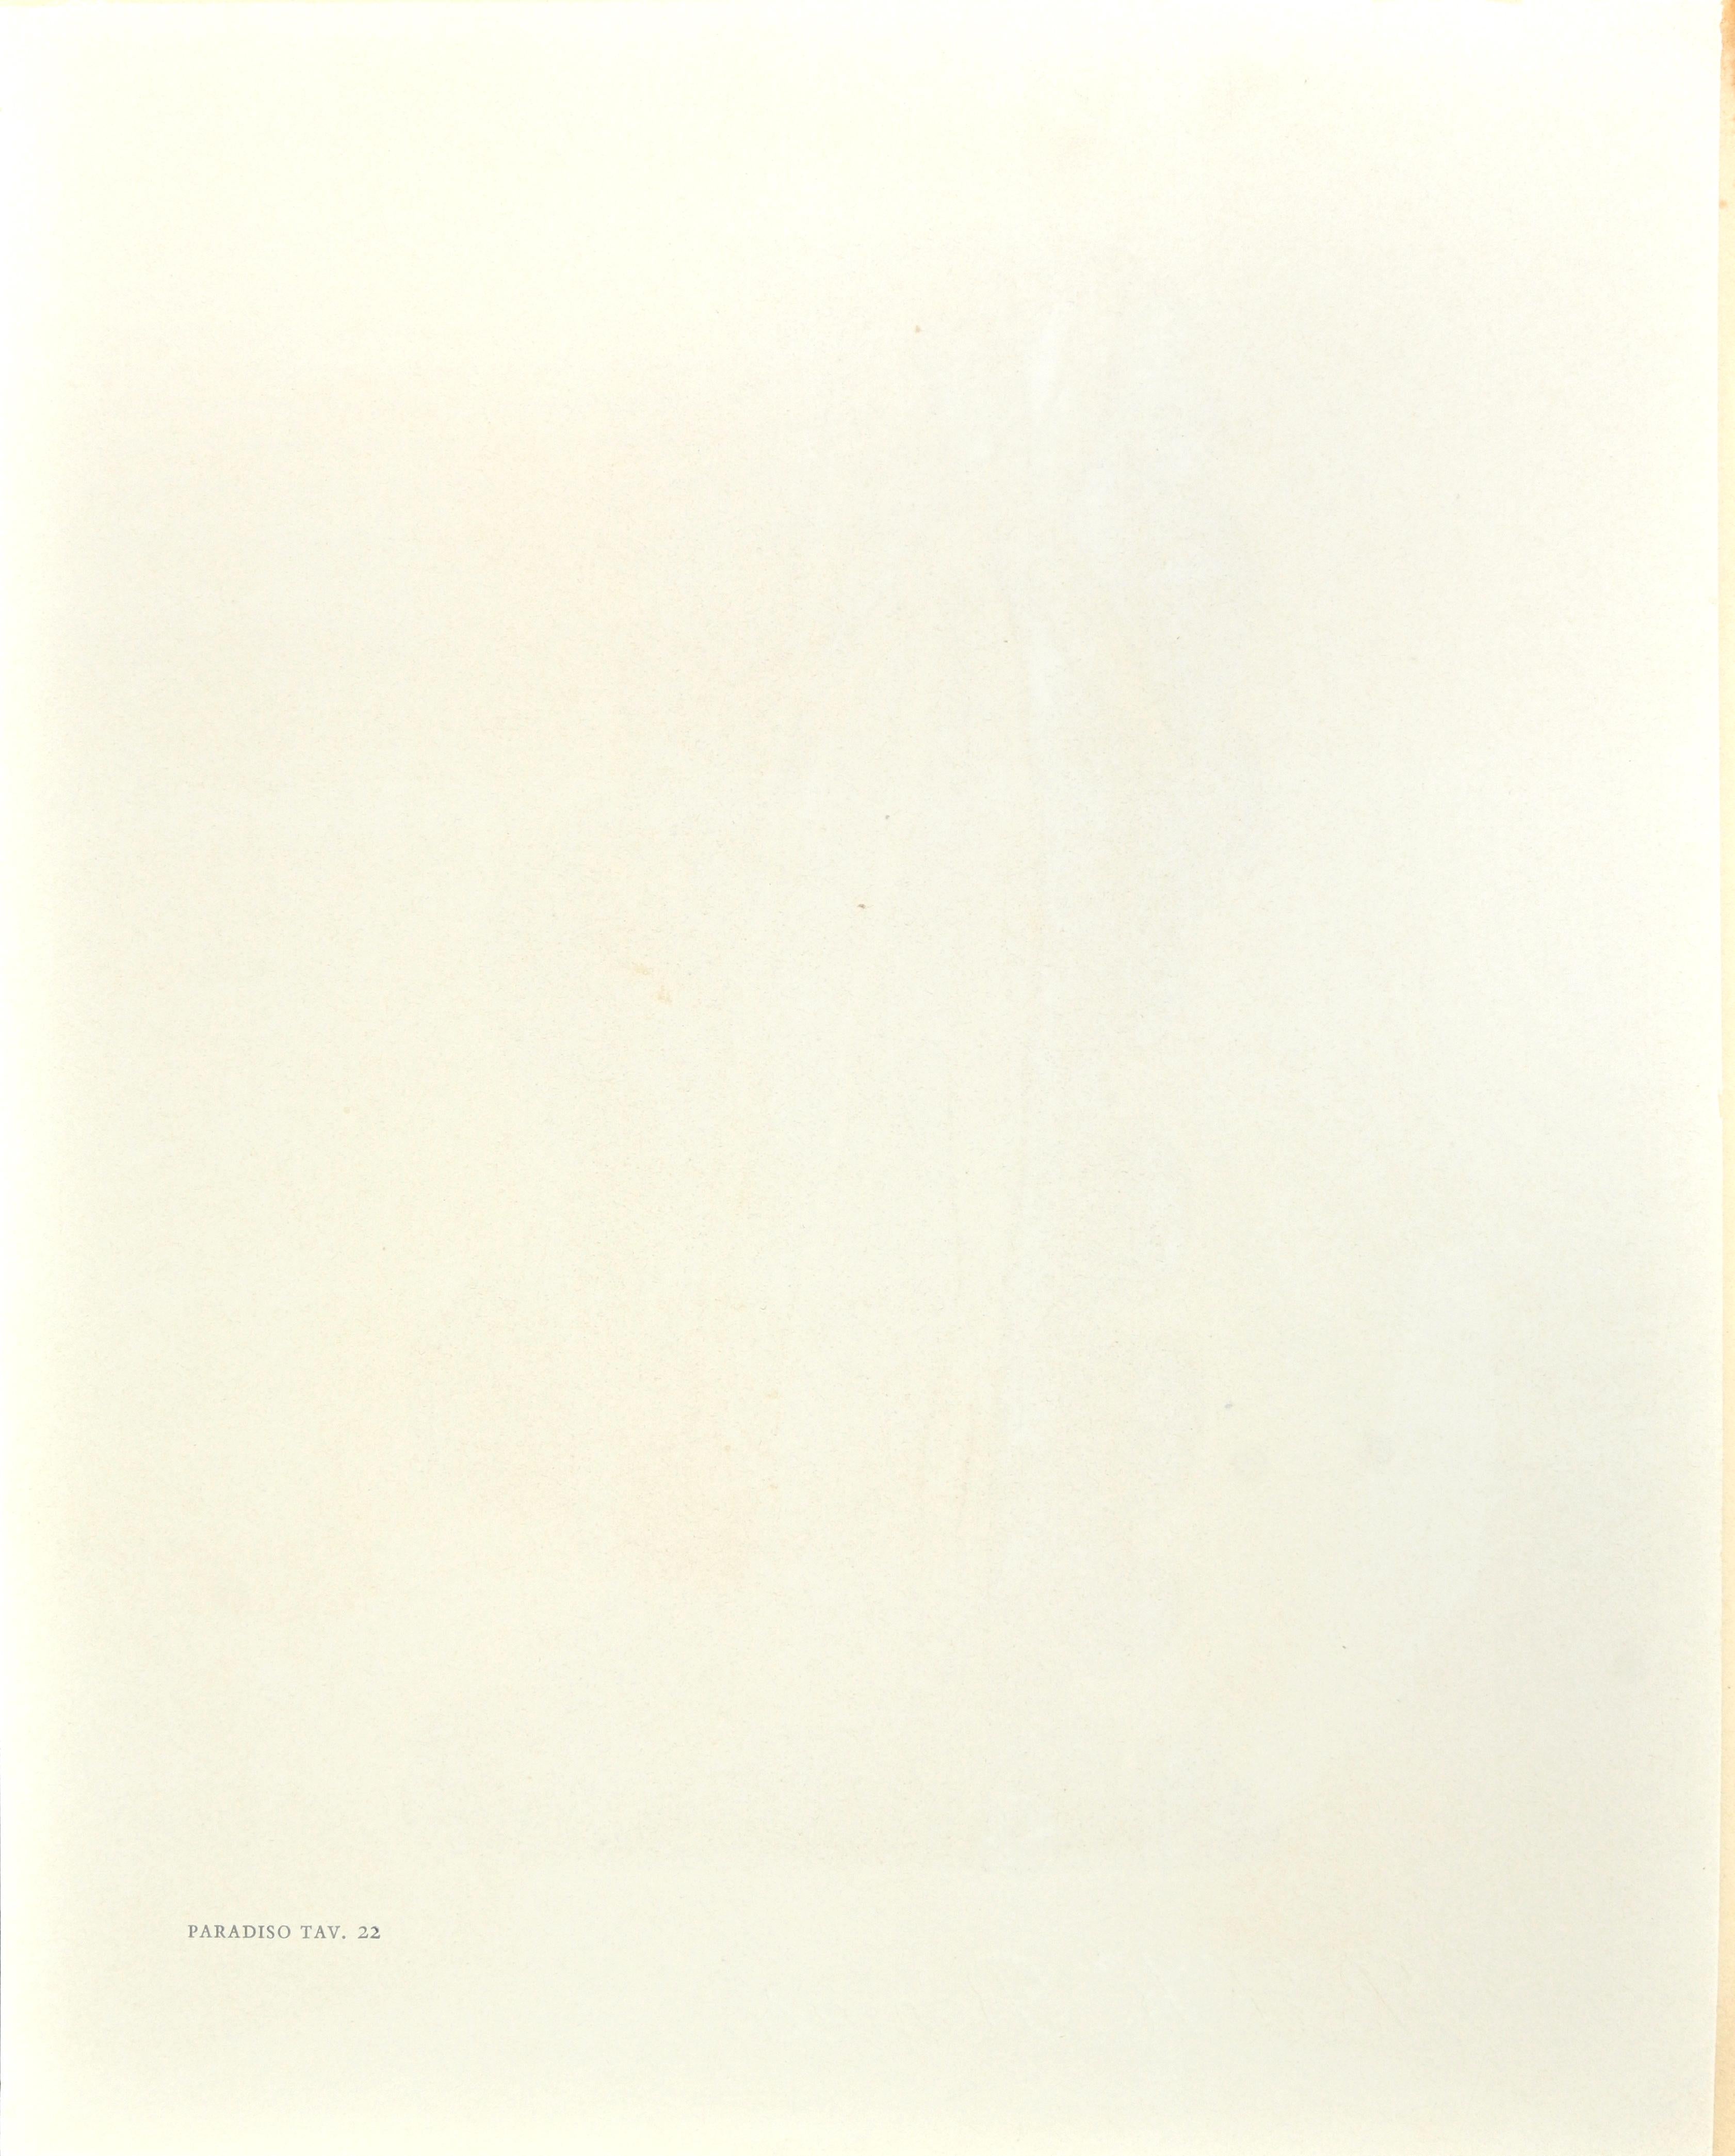 Impénétrabilité divine - Gravure sur bois attr. à Salvador Dalì - 1963 - Print de Salvador Dalí